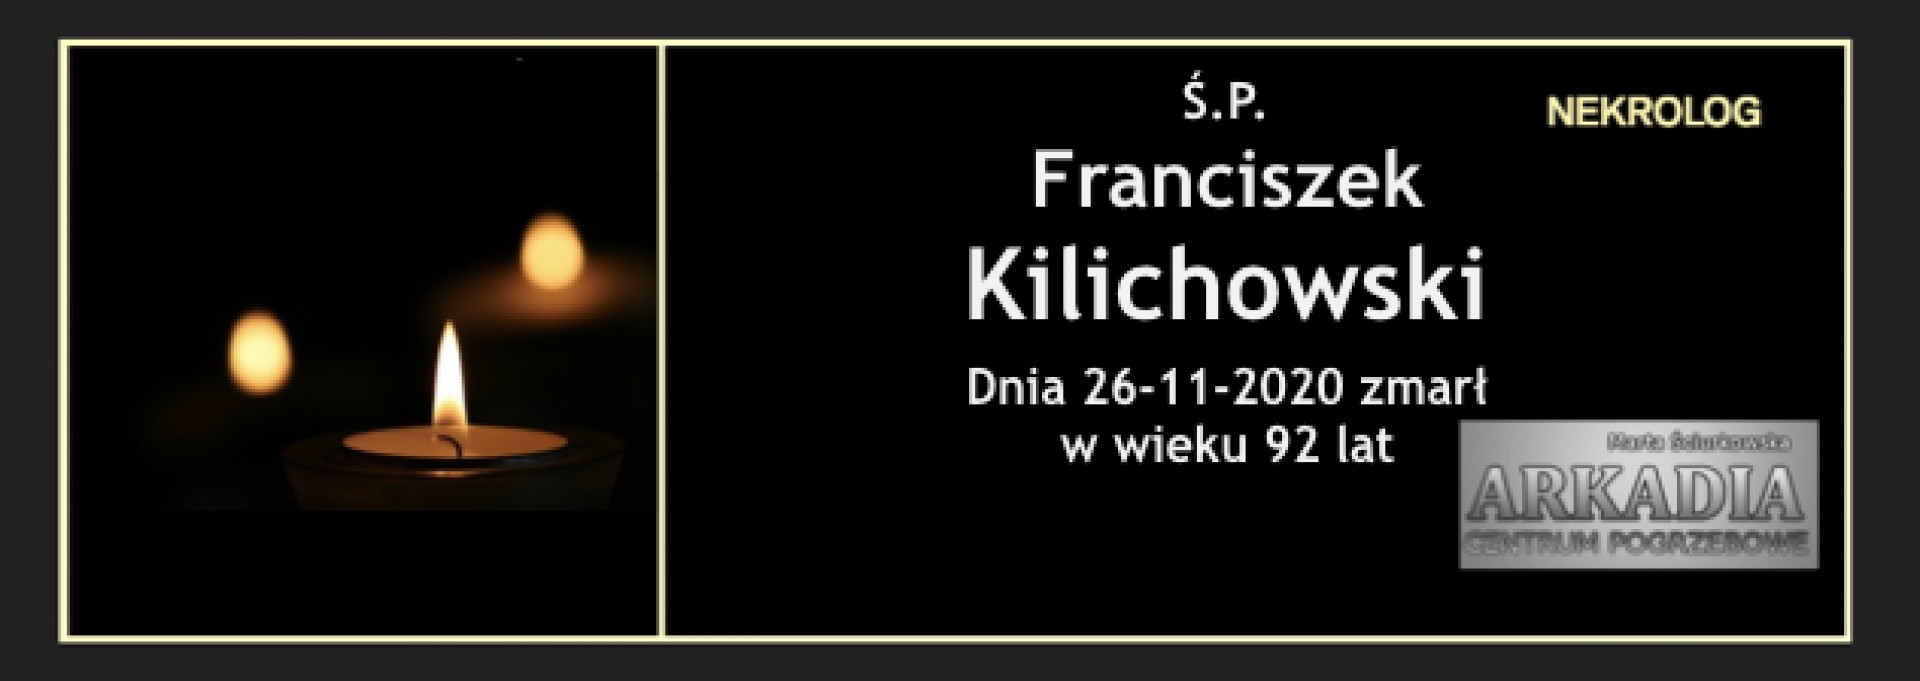 Ś.P. Franciszek Kilichowski